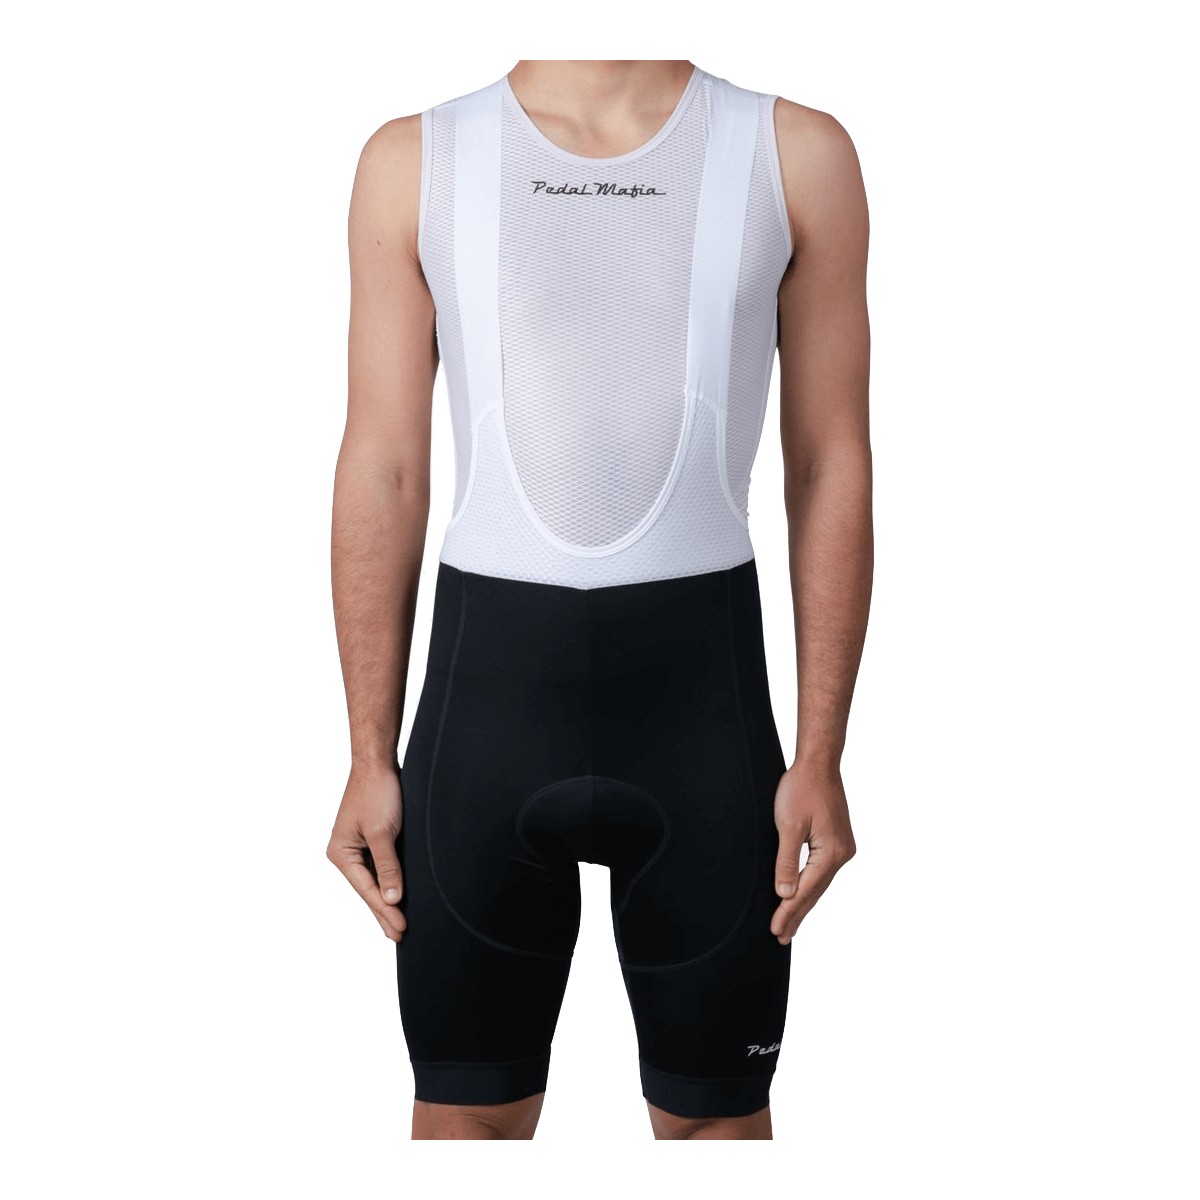 Mafia Tech Black White Pedal Bib Shorts, Size S